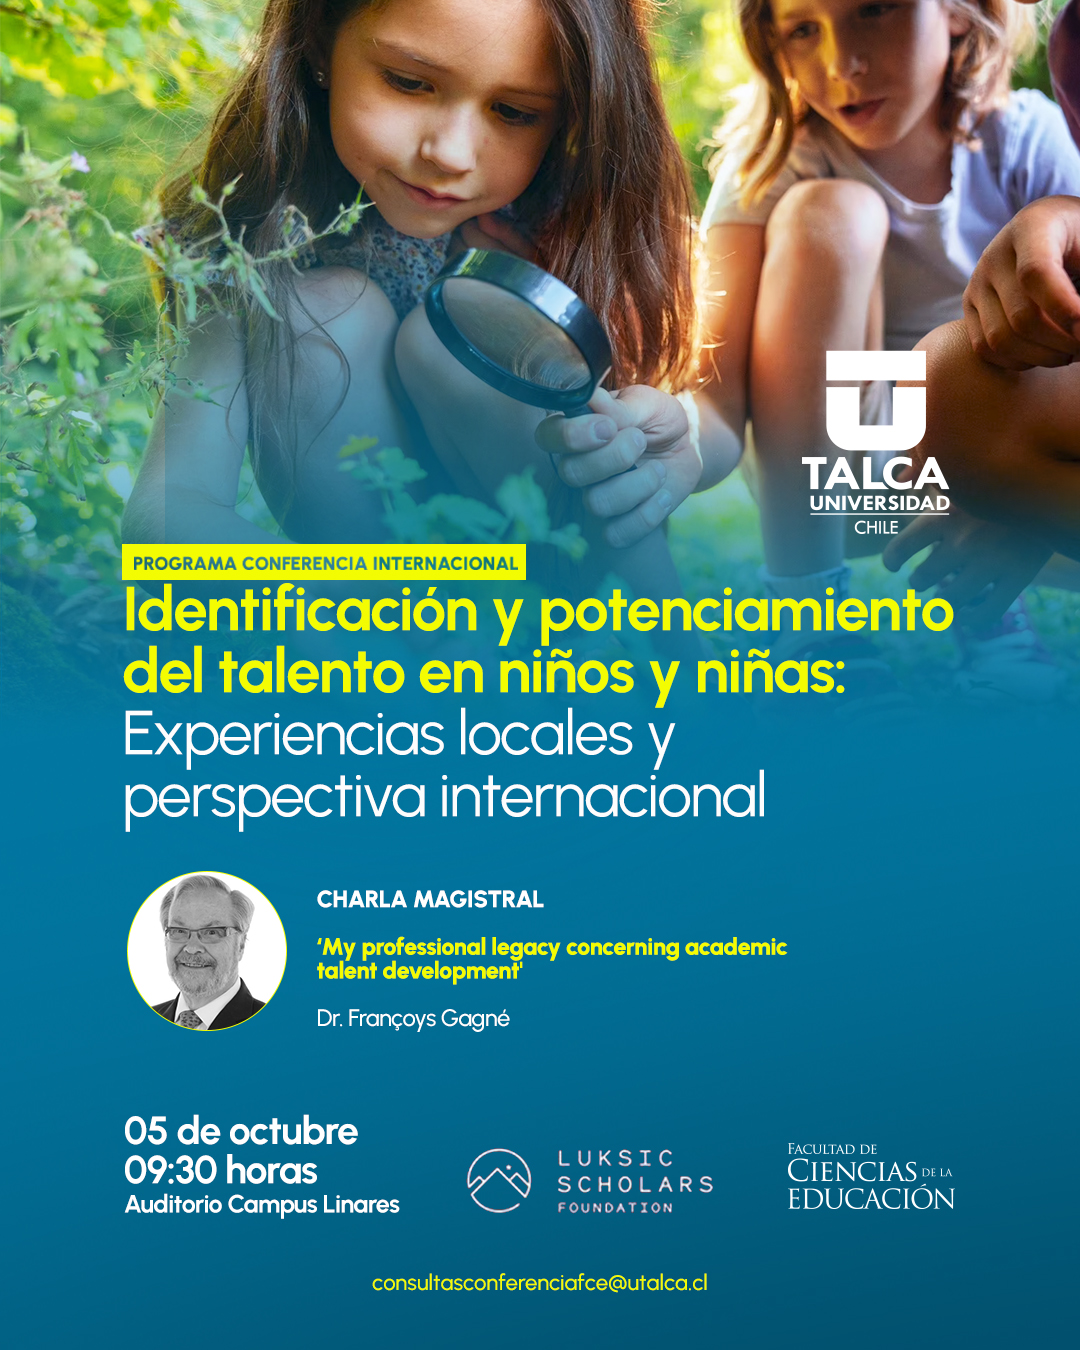 Programa Conferencia internacional: Identificación y potencionamiento del talento de niños y niñas: Experiencias locales y perspectiva internacional